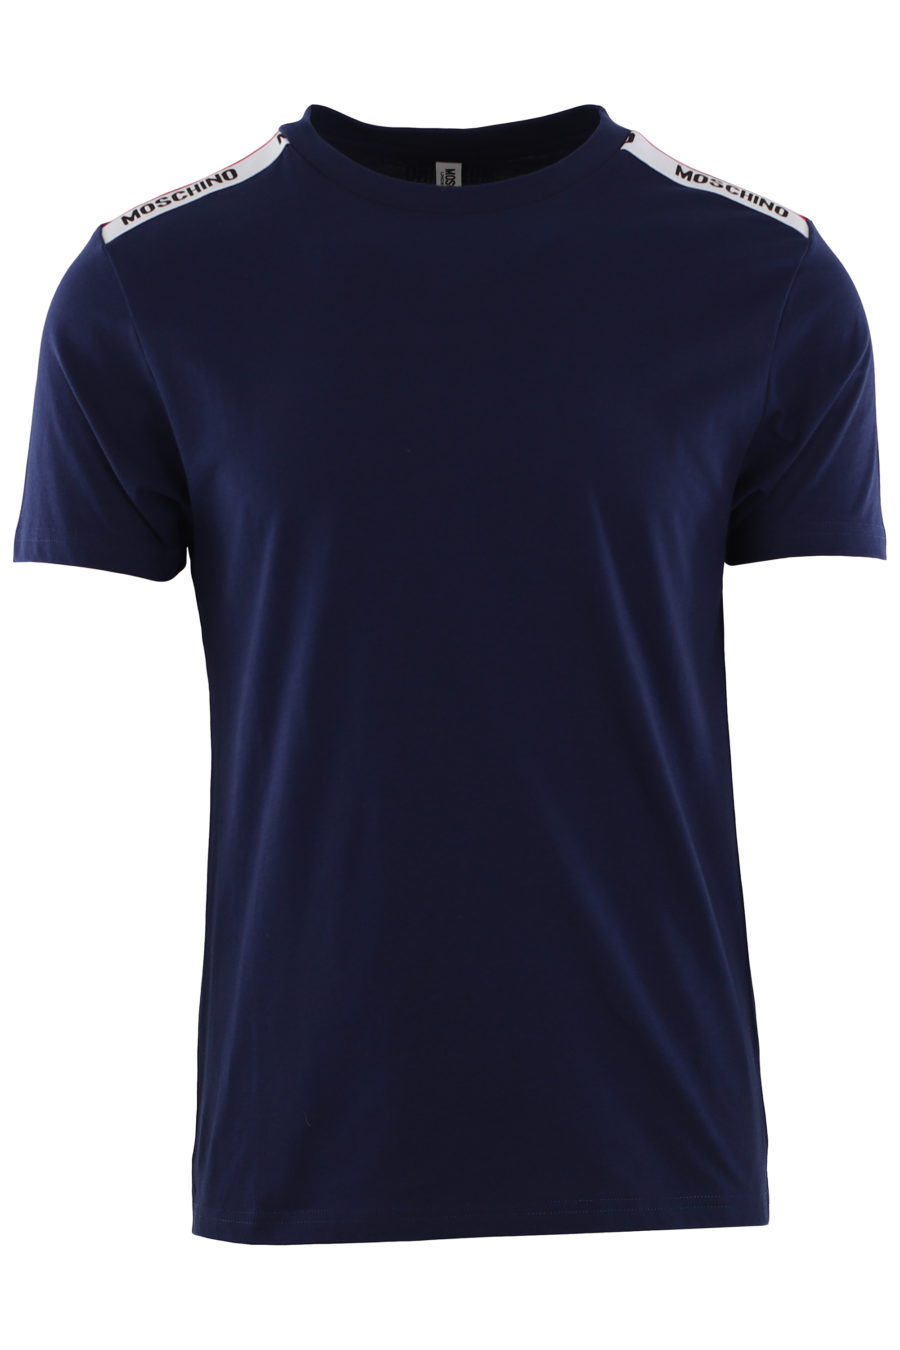 Camiseta azul con logo en cinta en hombros - IMG 0401